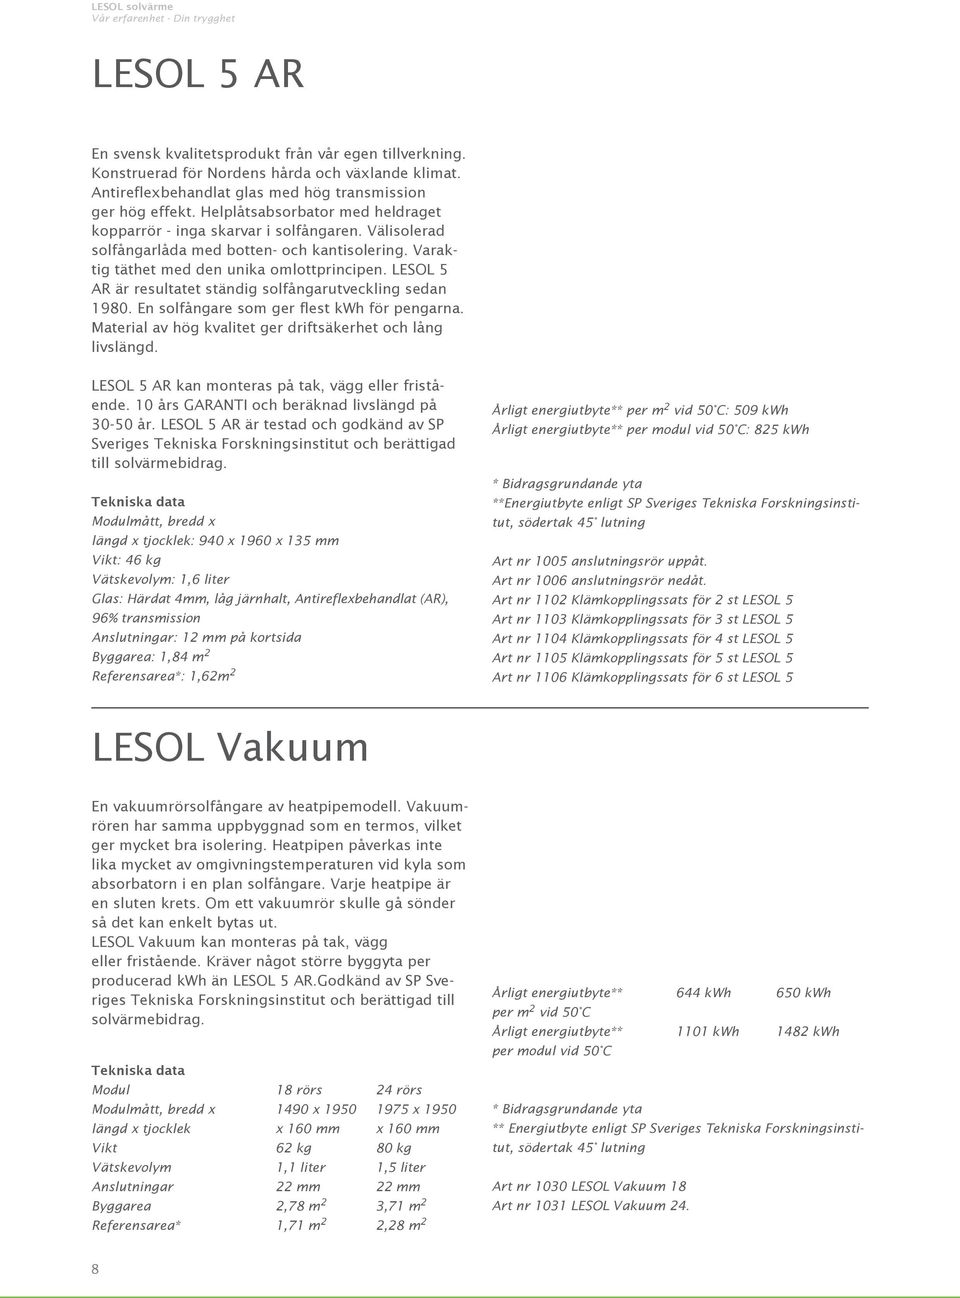 LESOL 5 AR är resultatet ständig solfångarutveckling sedan 1980. En solfångare som ger flest kwh för pengarna. Material av hög kvalitet ger driftsäkerhet och lång livslängd.